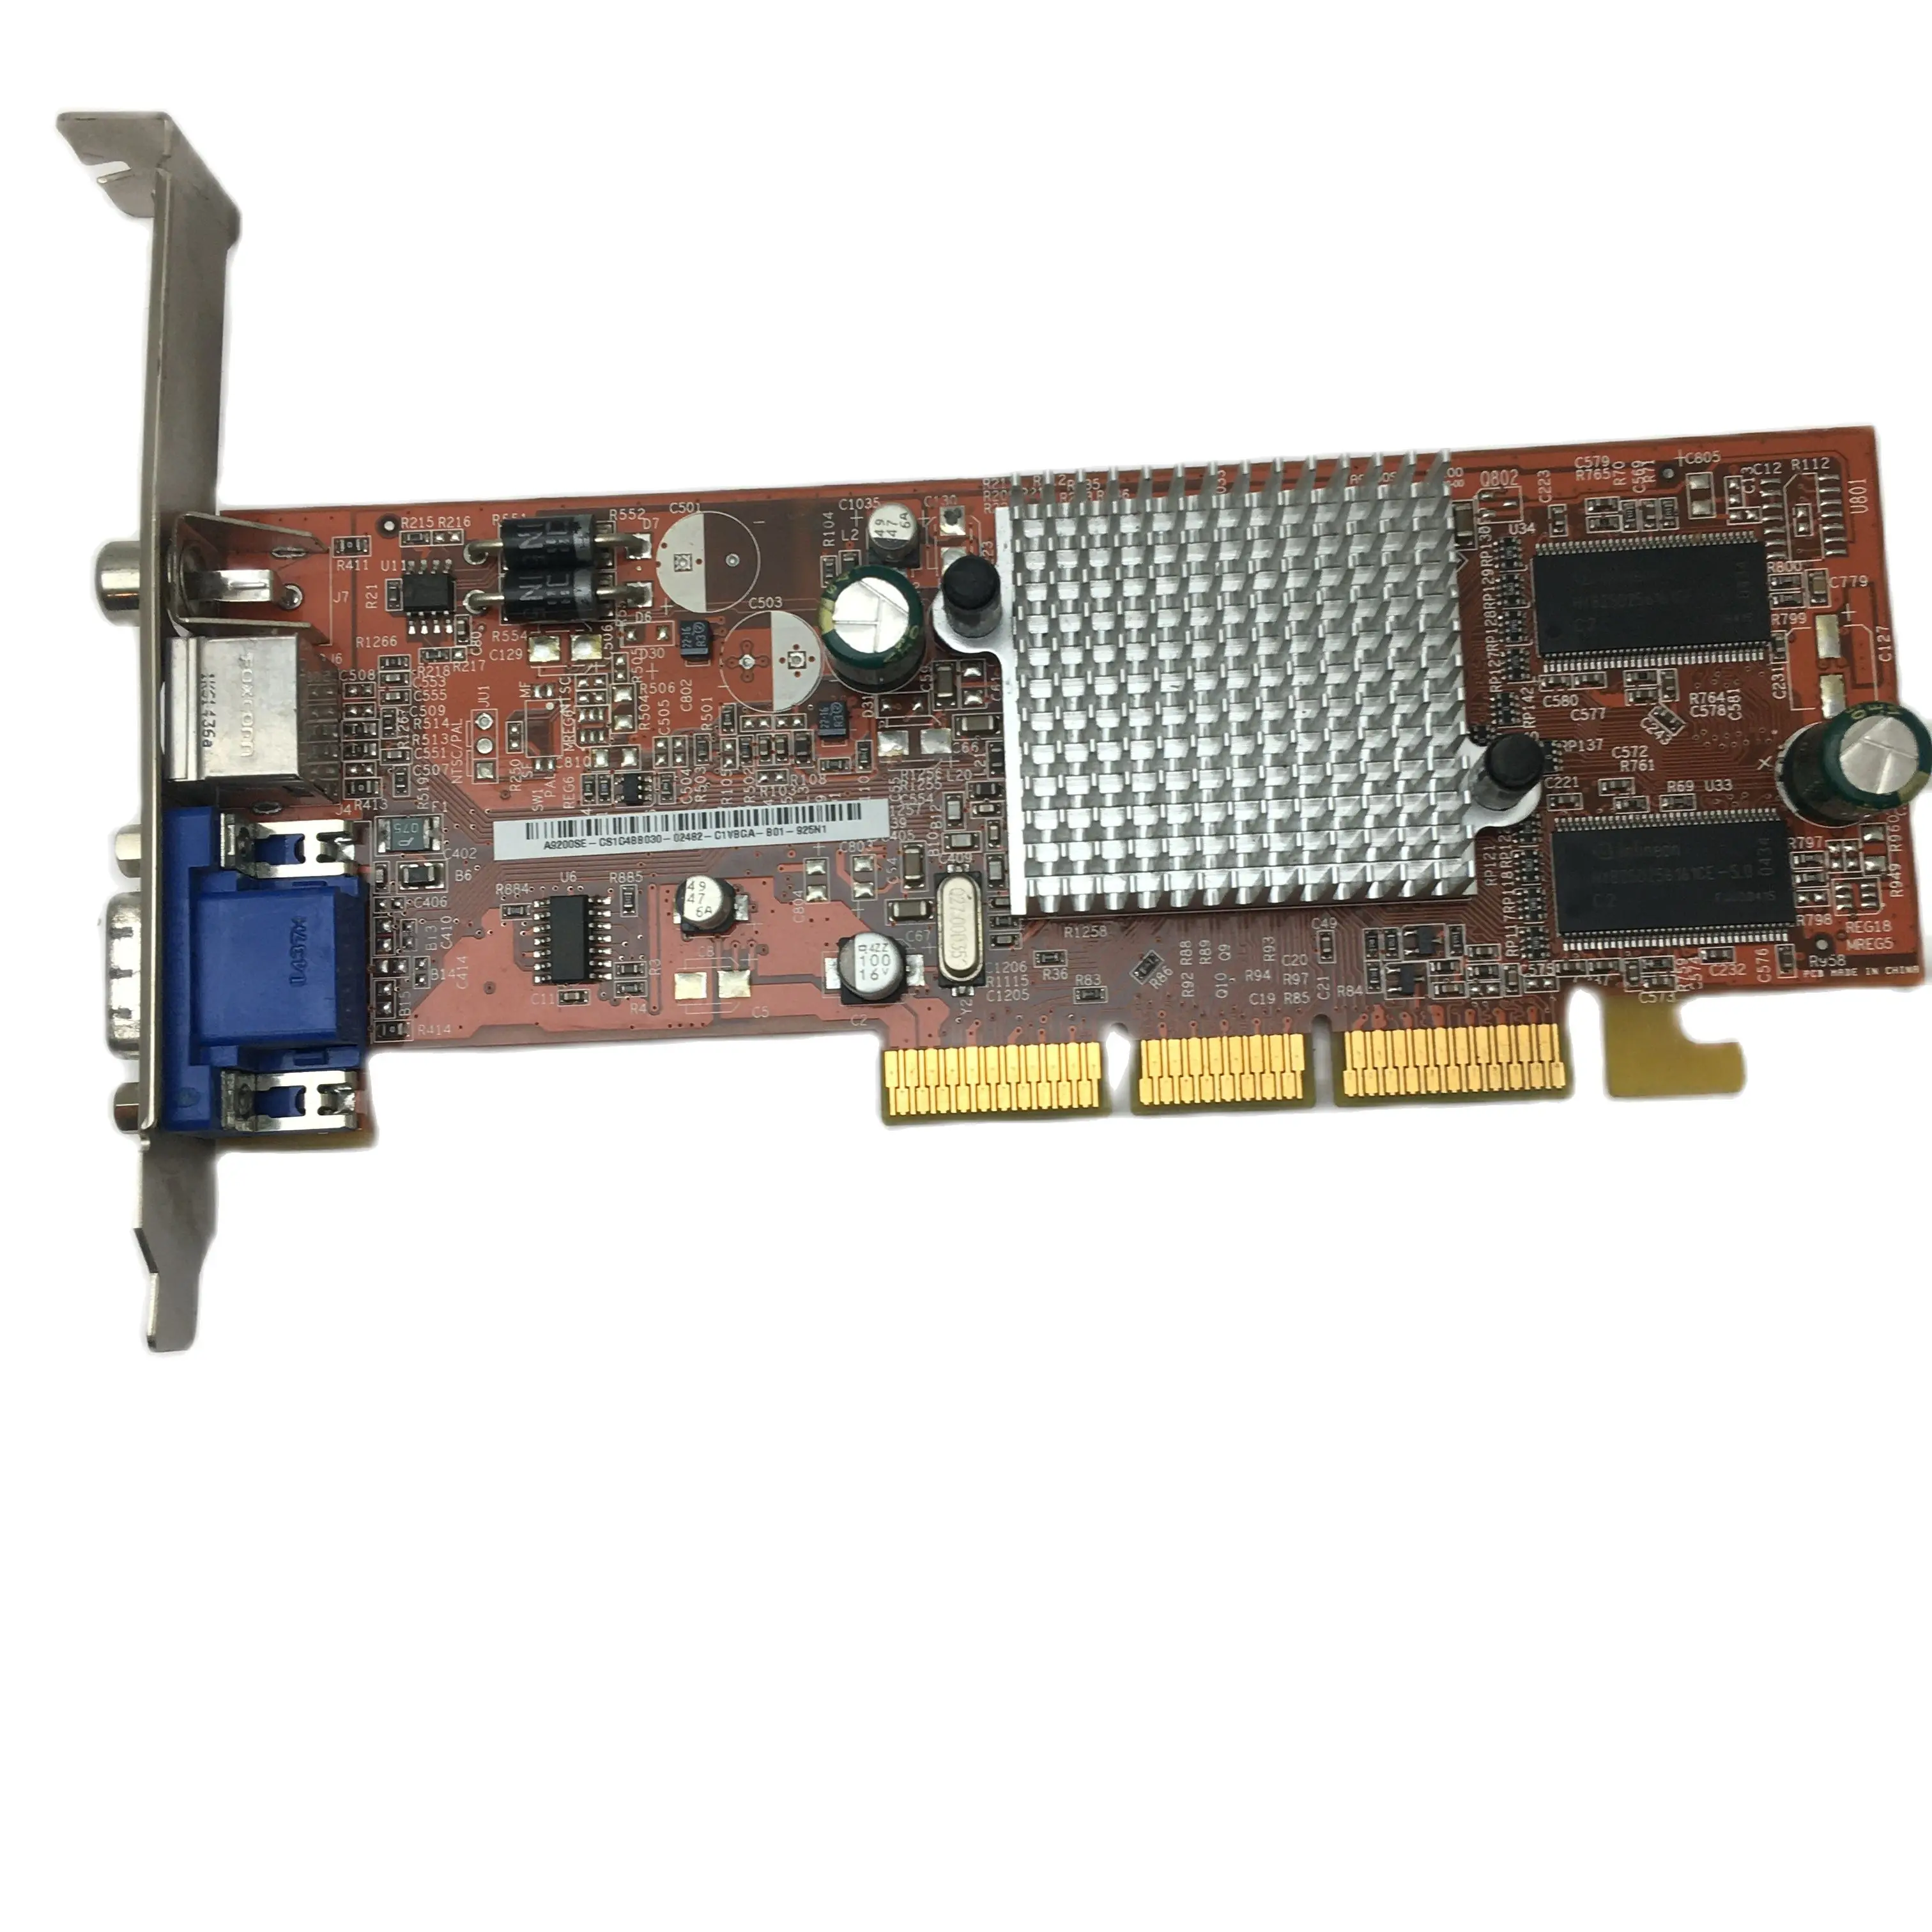 Kartu Video Asus Radeon 9200 SE DDR KDK 8X128MB 64bit 164MHz